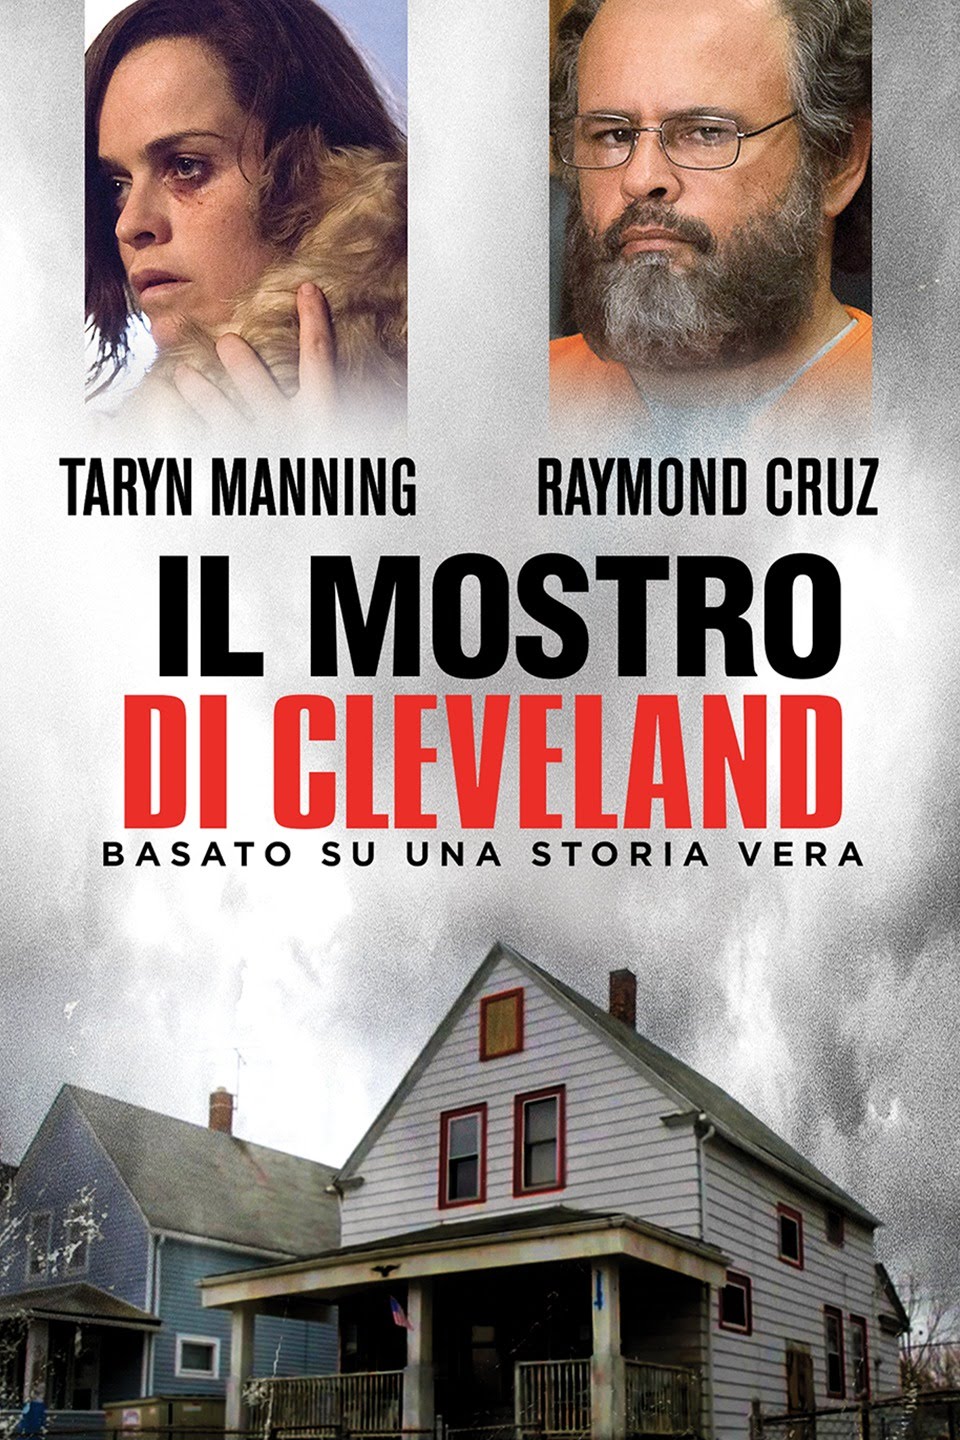 Il mostro di Cleveland [HD] (2015)